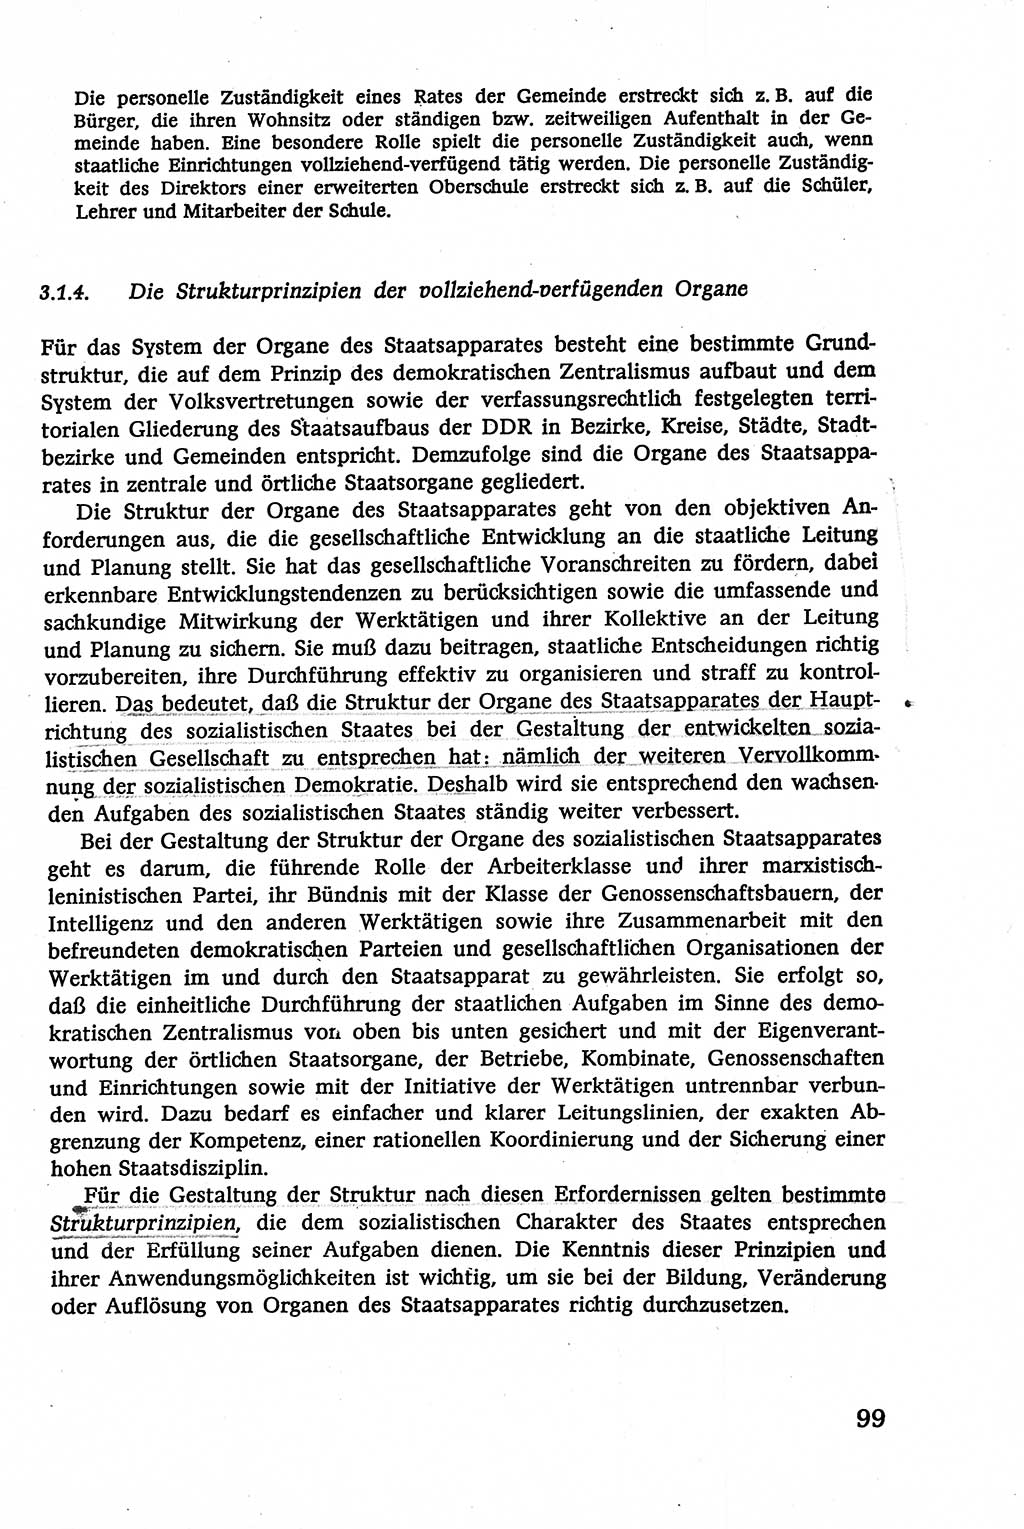 Verwaltungsrecht [Deutsche Demokratische Republik (DDR)], Lehrbuch 1979, Seite 99 (Verw.-R. DDR Lb. 1979, S. 99)